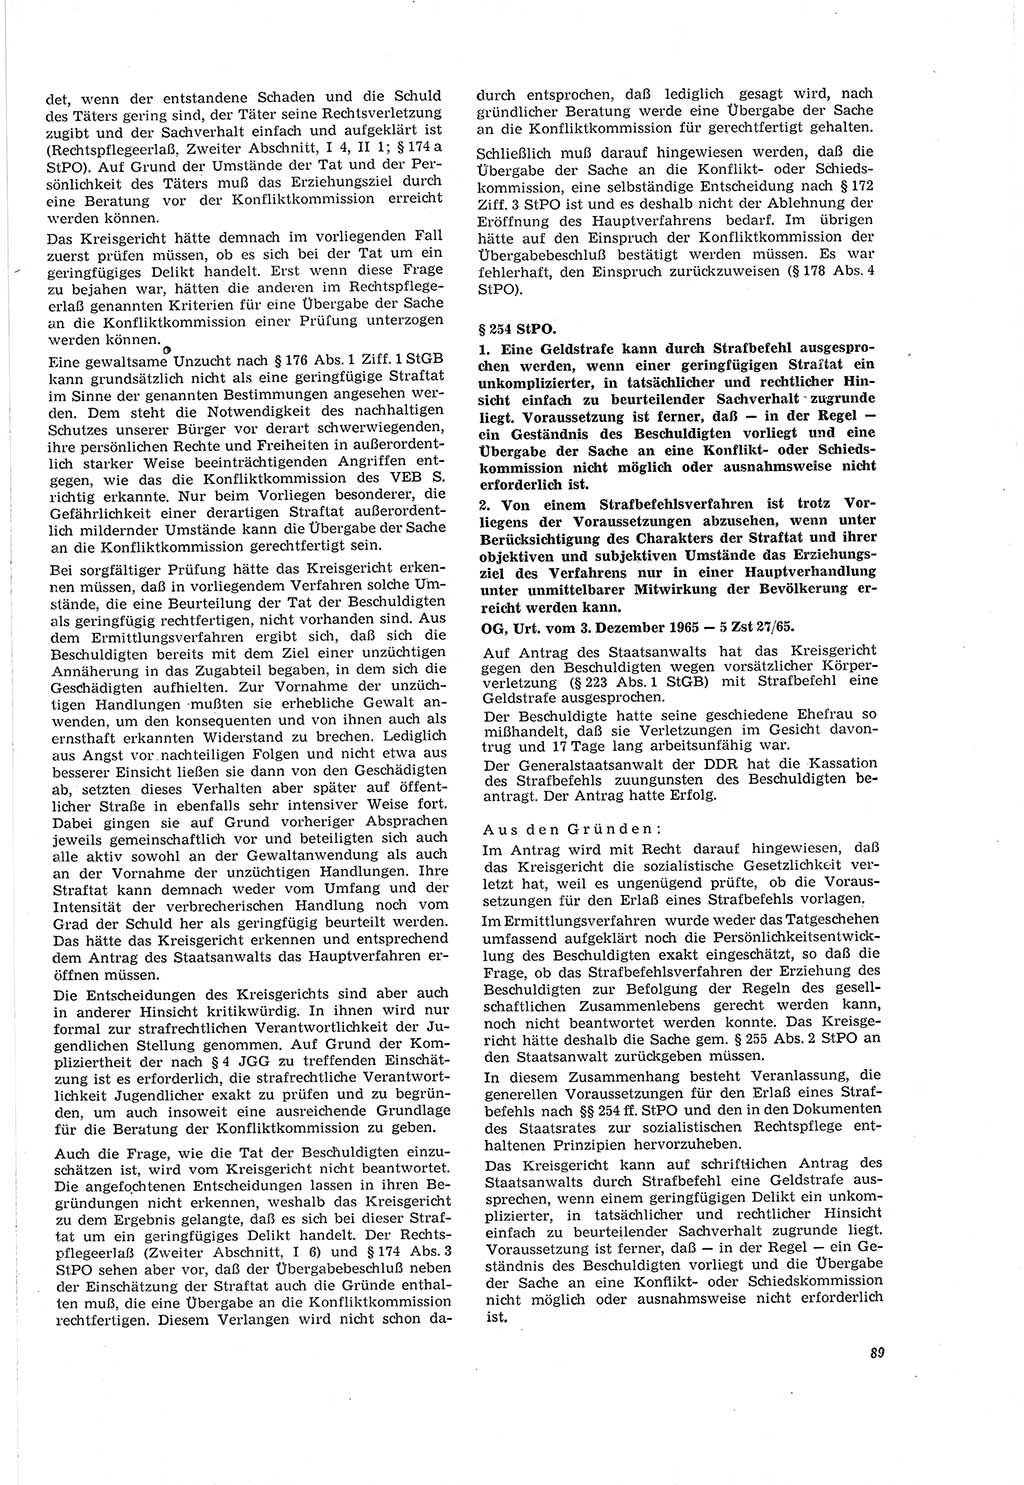 Neue Justiz (NJ), Zeitschrift für Recht und Rechtswissenschaft [Deutsche Demokratische Republik (DDR)], 20. Jahrgang 1966, Seite 89 (NJ DDR 1966, S. 89)